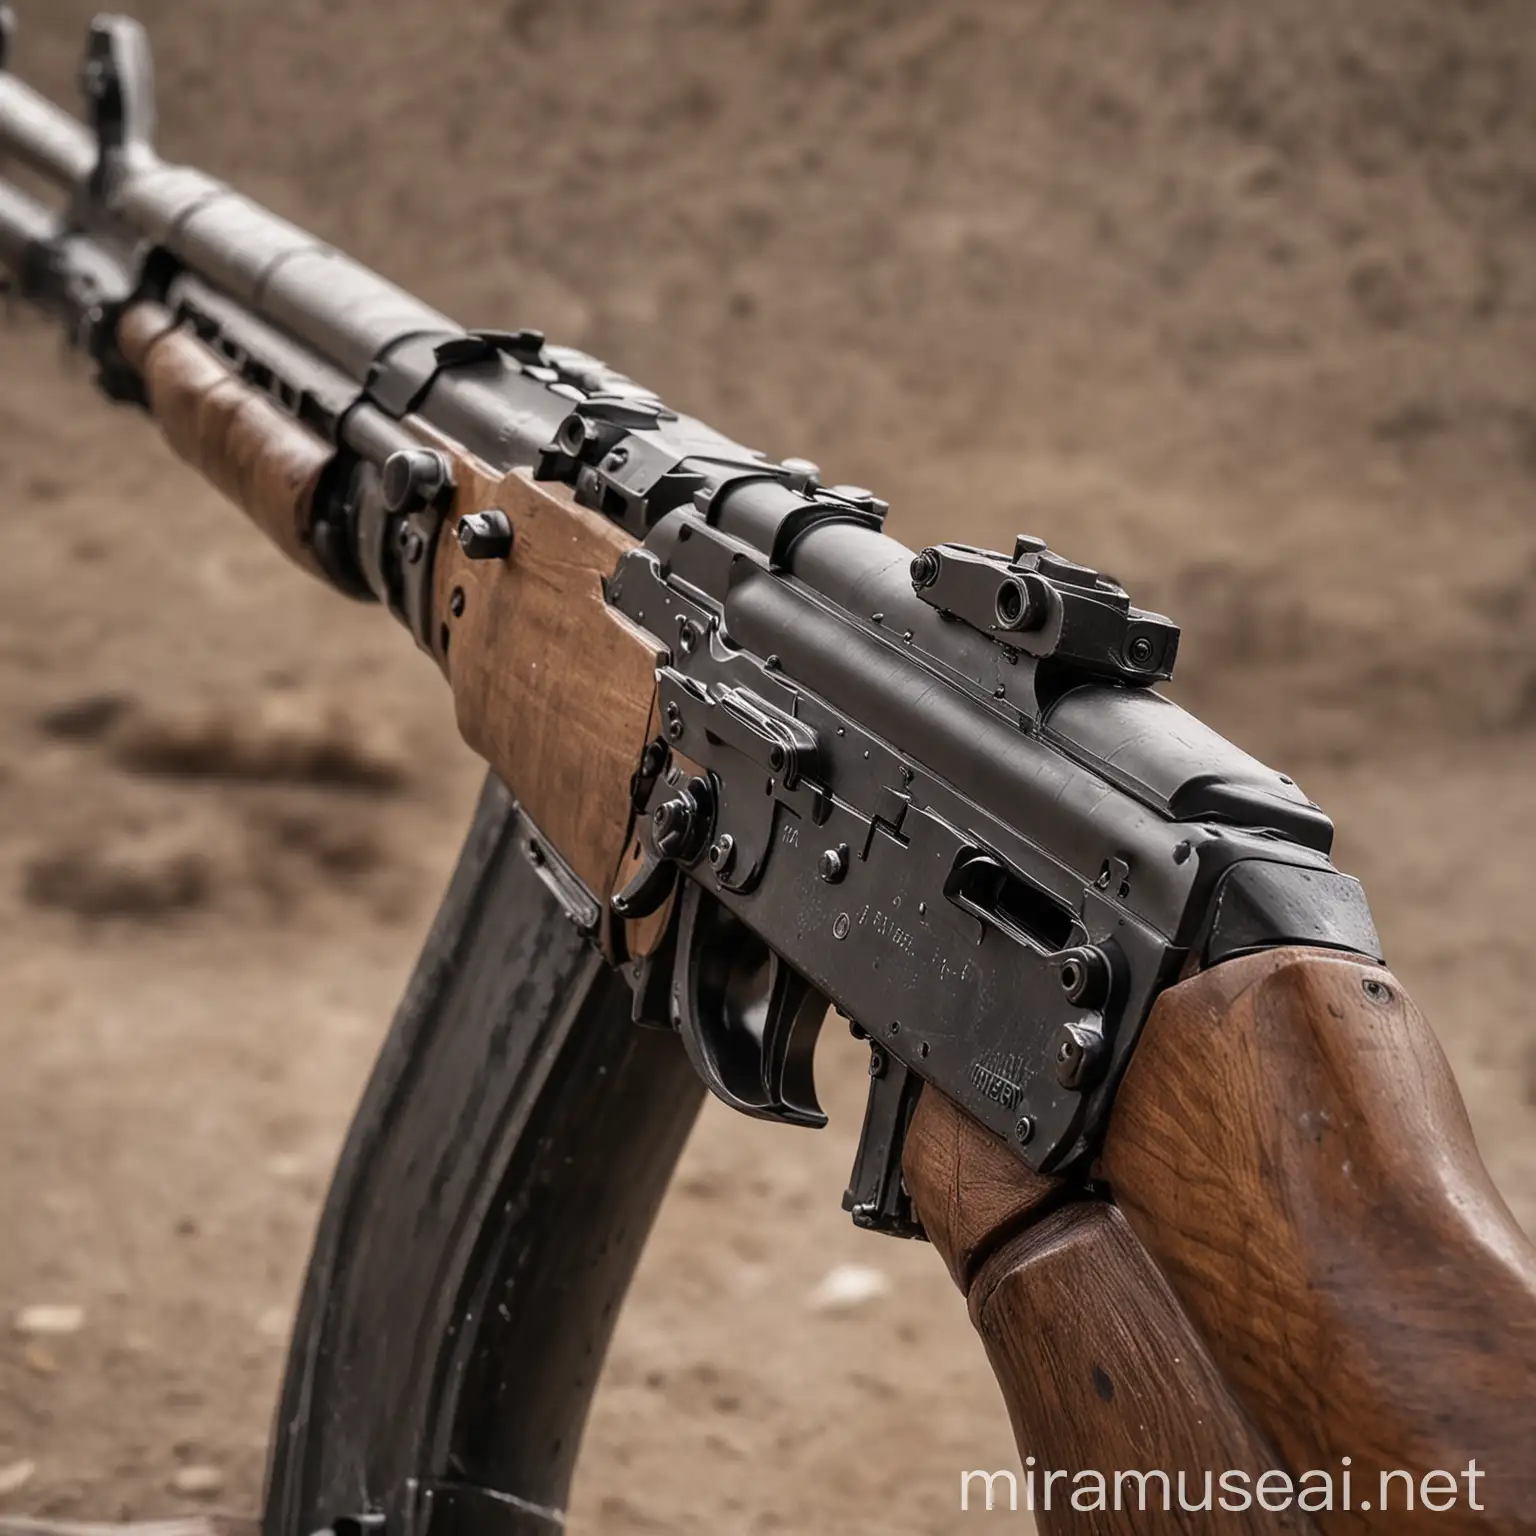 CloseUp AK47 Barrel Weapon Photo